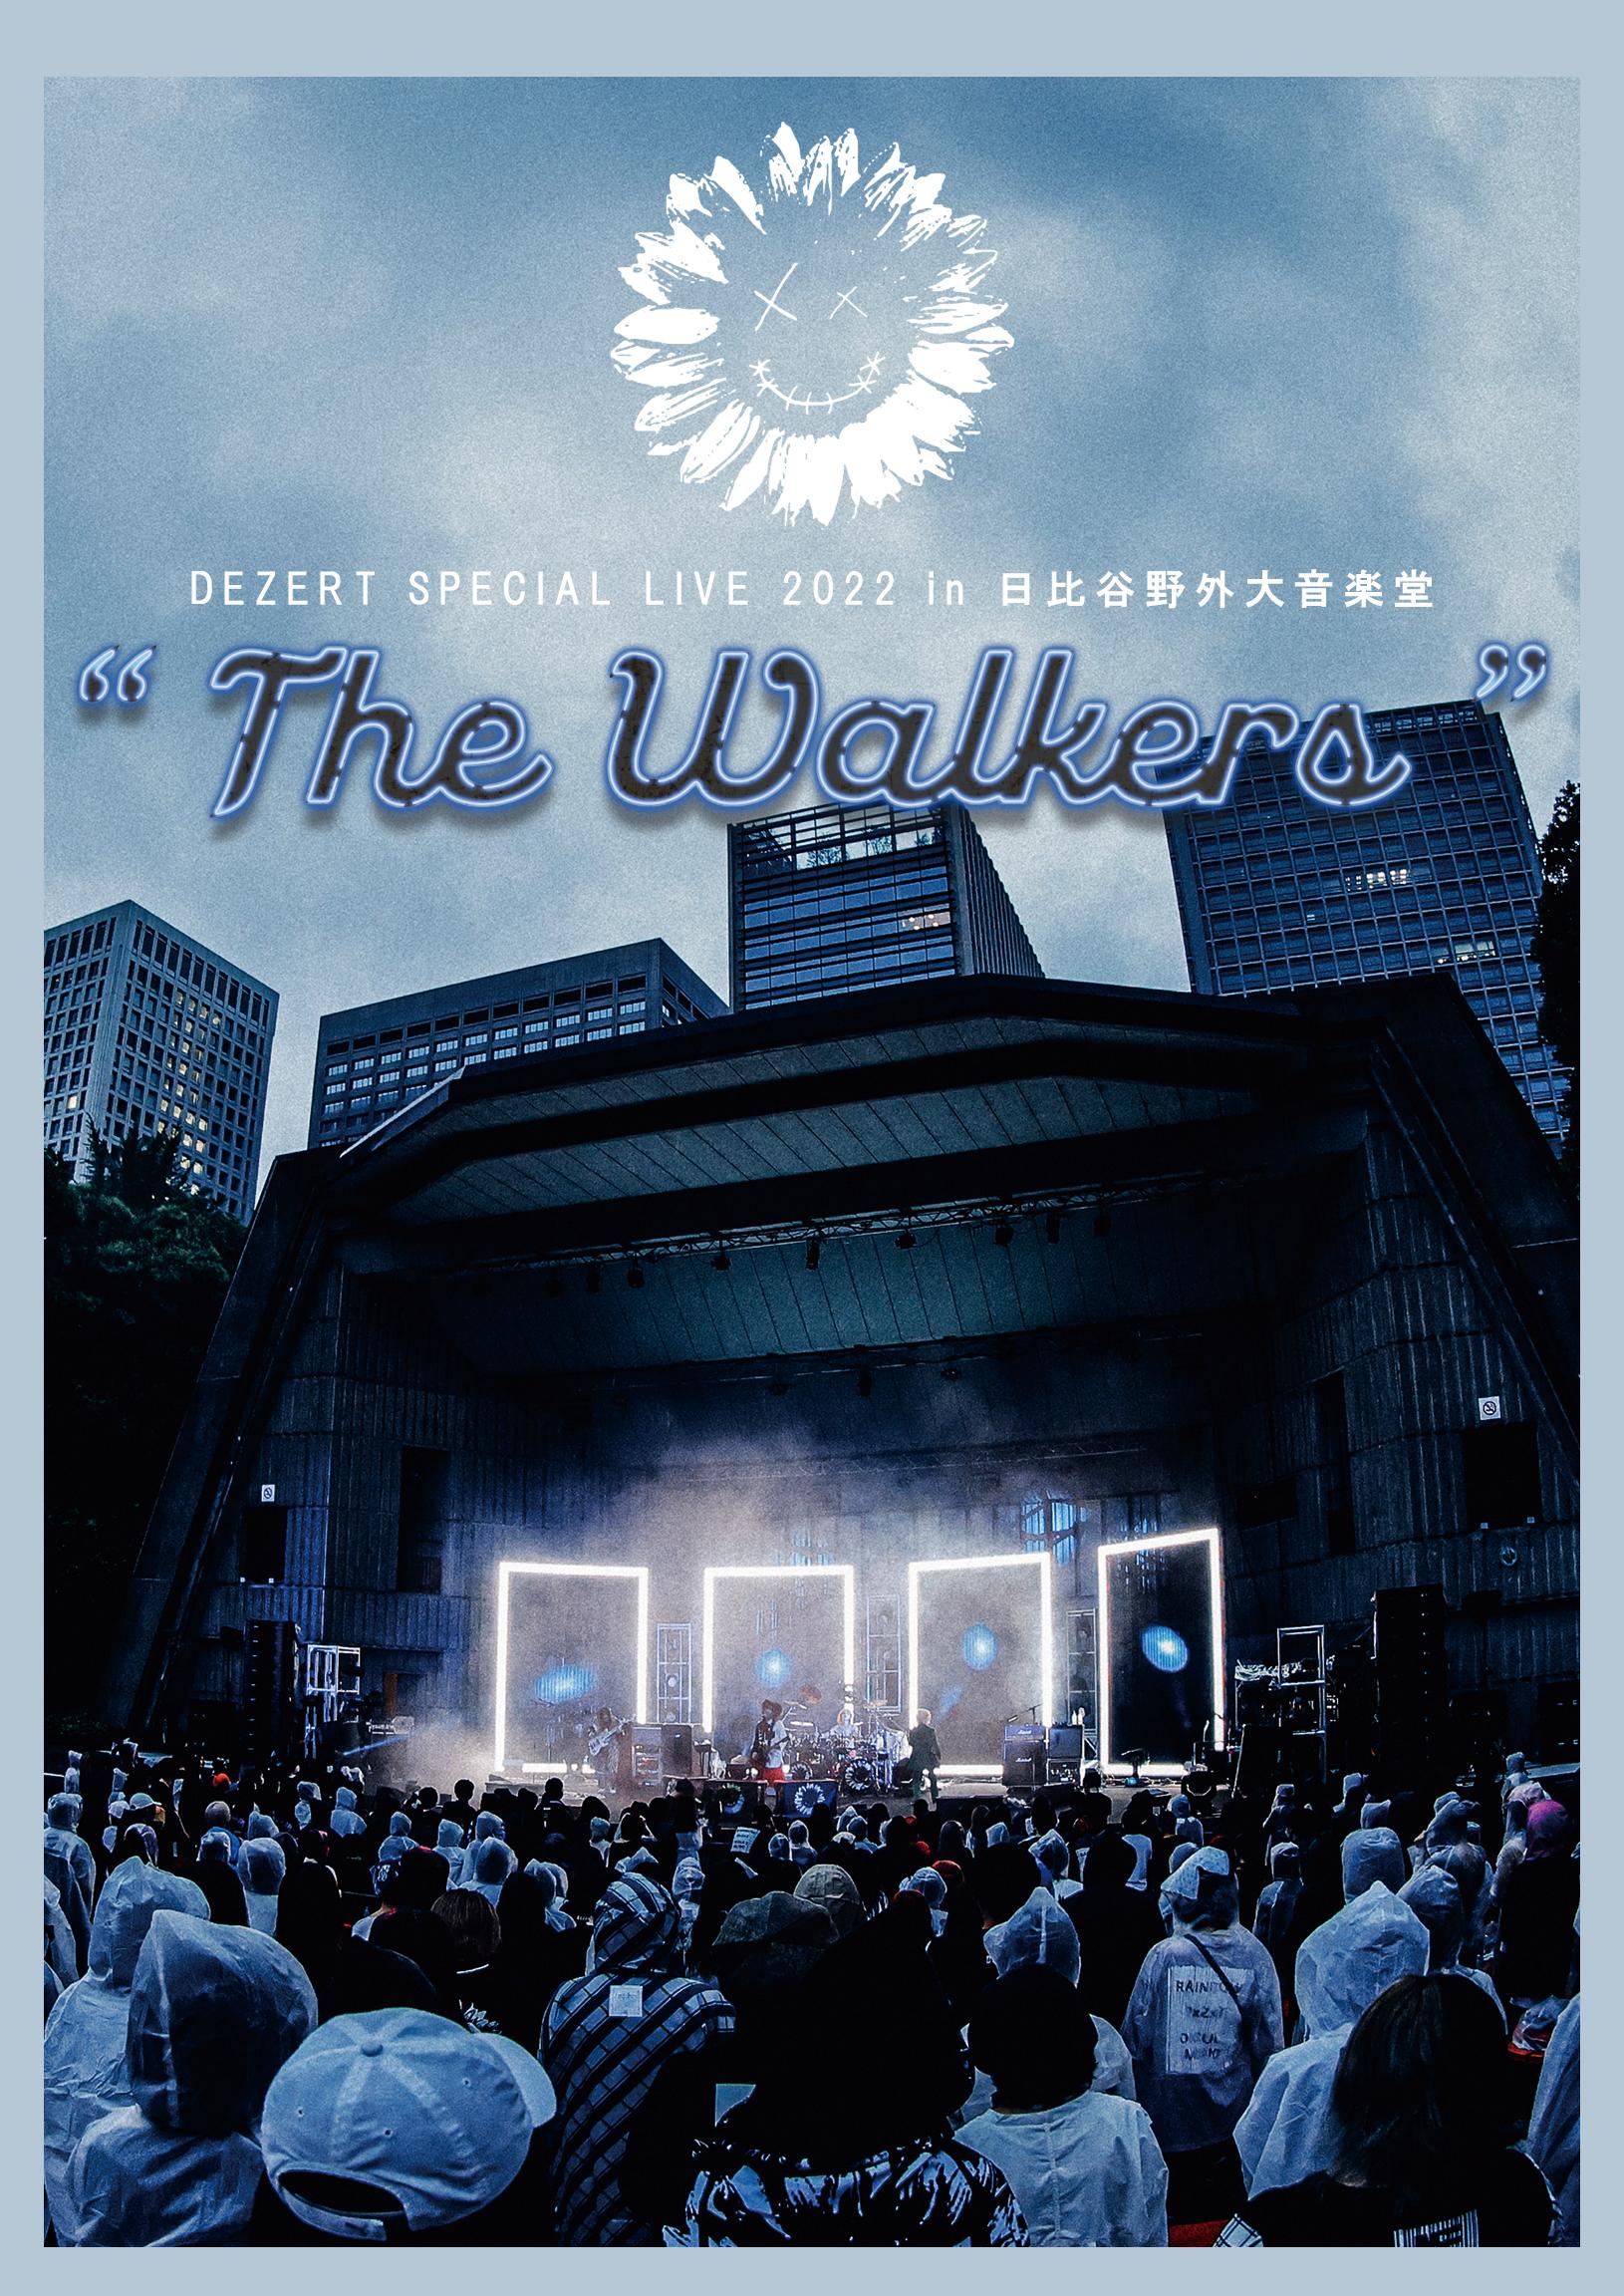 DEZERT SPECIAL LIVE 2022 in 日比谷野外大音楽堂 “The Walkers” LIVE ...